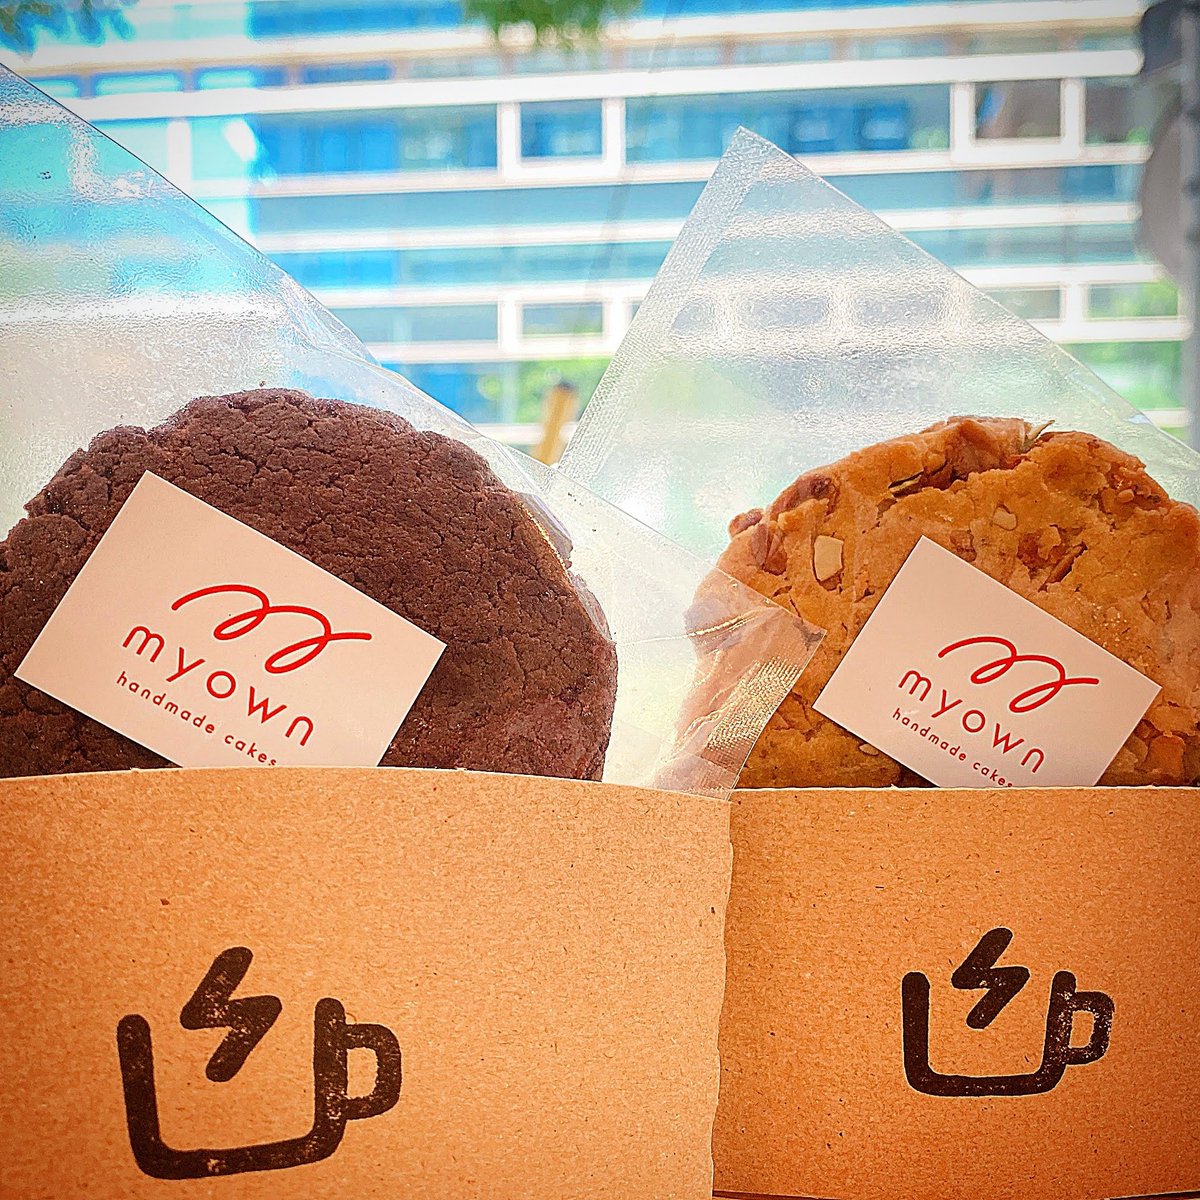 今日は、敬老の日👴👵 おじいちゃんおばあちゃんへのプレゼントはお決まりですか？ #myown_handmadecakes の焼き菓子は、素材にこだわったからだやさしいお菓子。プレゼントにもおすすめですよ😊

#innergiecafe #yokohamacafe #yokohamagram #横浜カフェ #クッキー #veganクッキー #グラノーラ